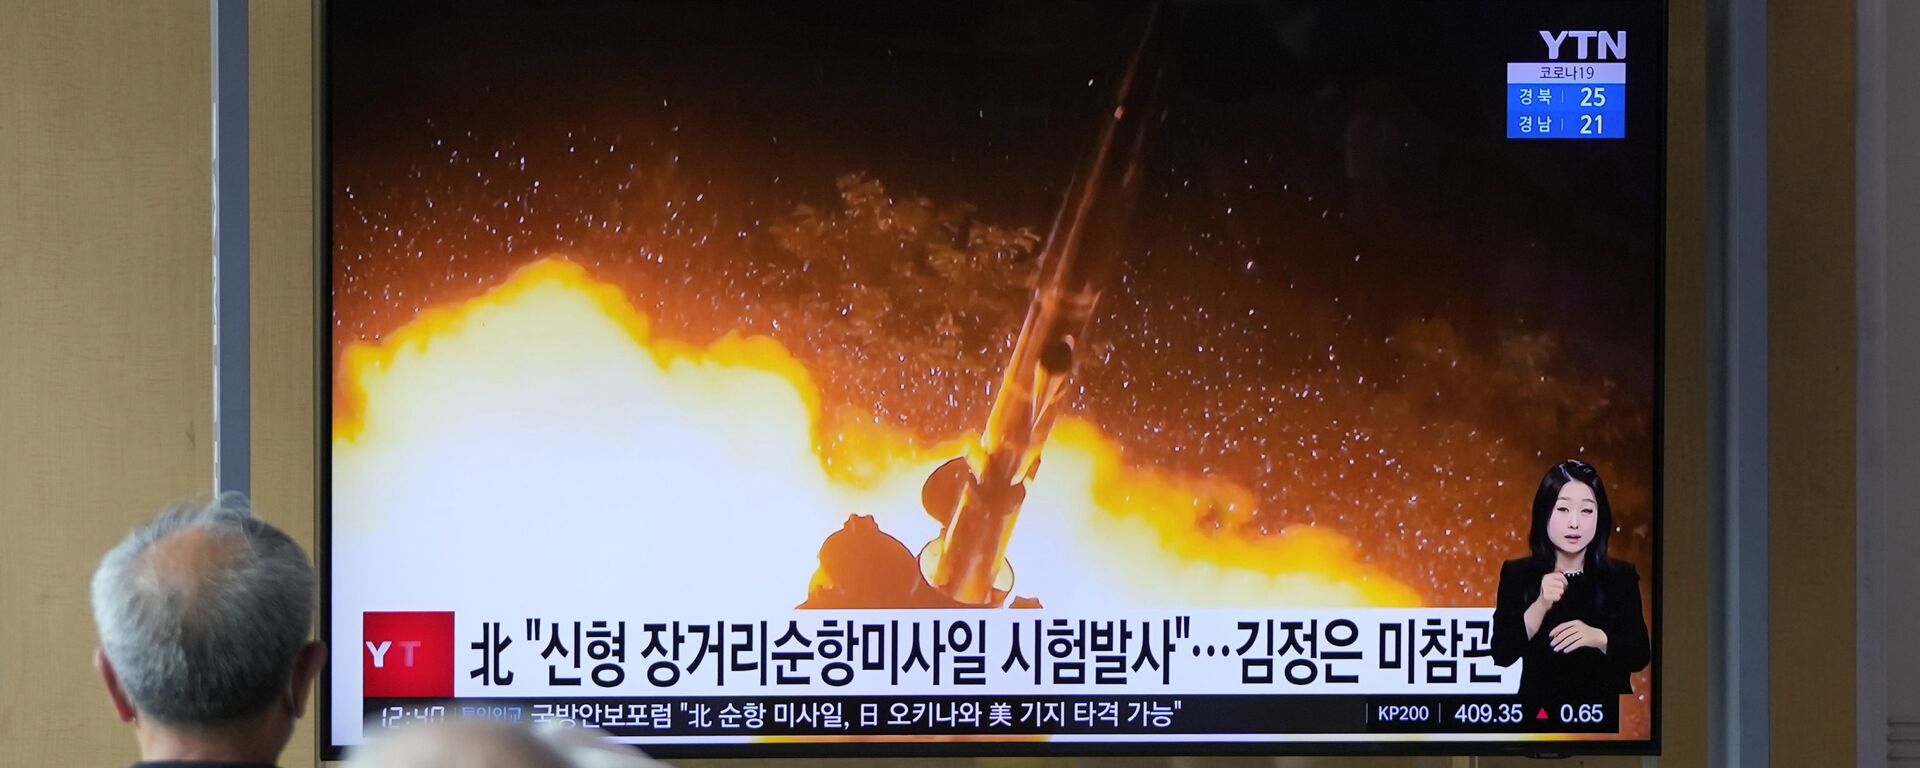 浜田防衛相が北朝鮮の核開発について衆院で答弁、「核の小型化と弾頭化をすでに実現しているとみられる」 - Sputnik 日本, 1920, 13.10.2022